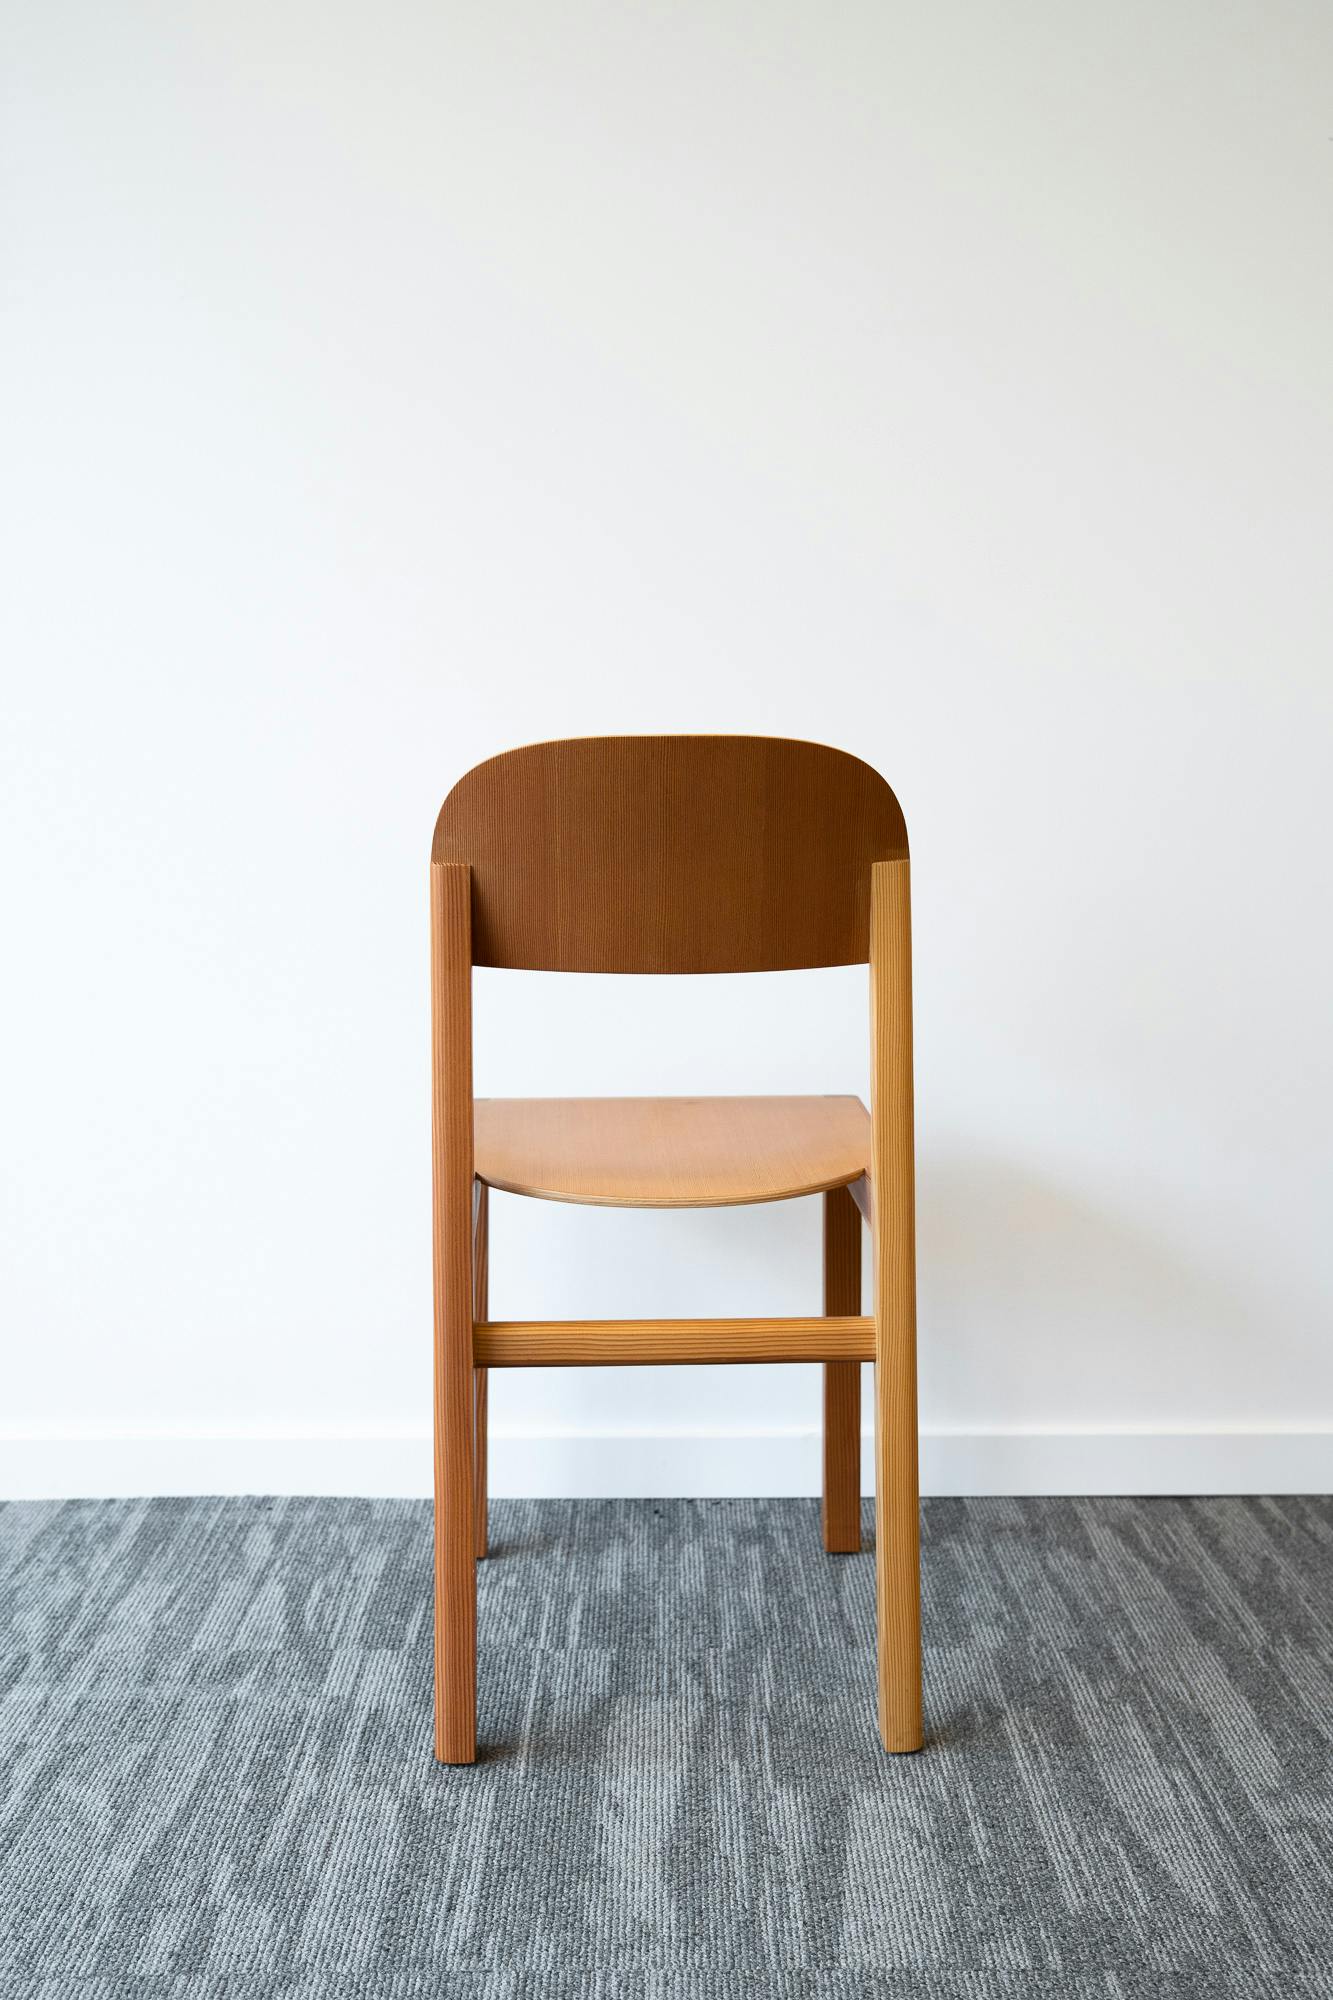 Wooden chair - Qualité de seconde main "Chaises" - Relieve Furniture - 2